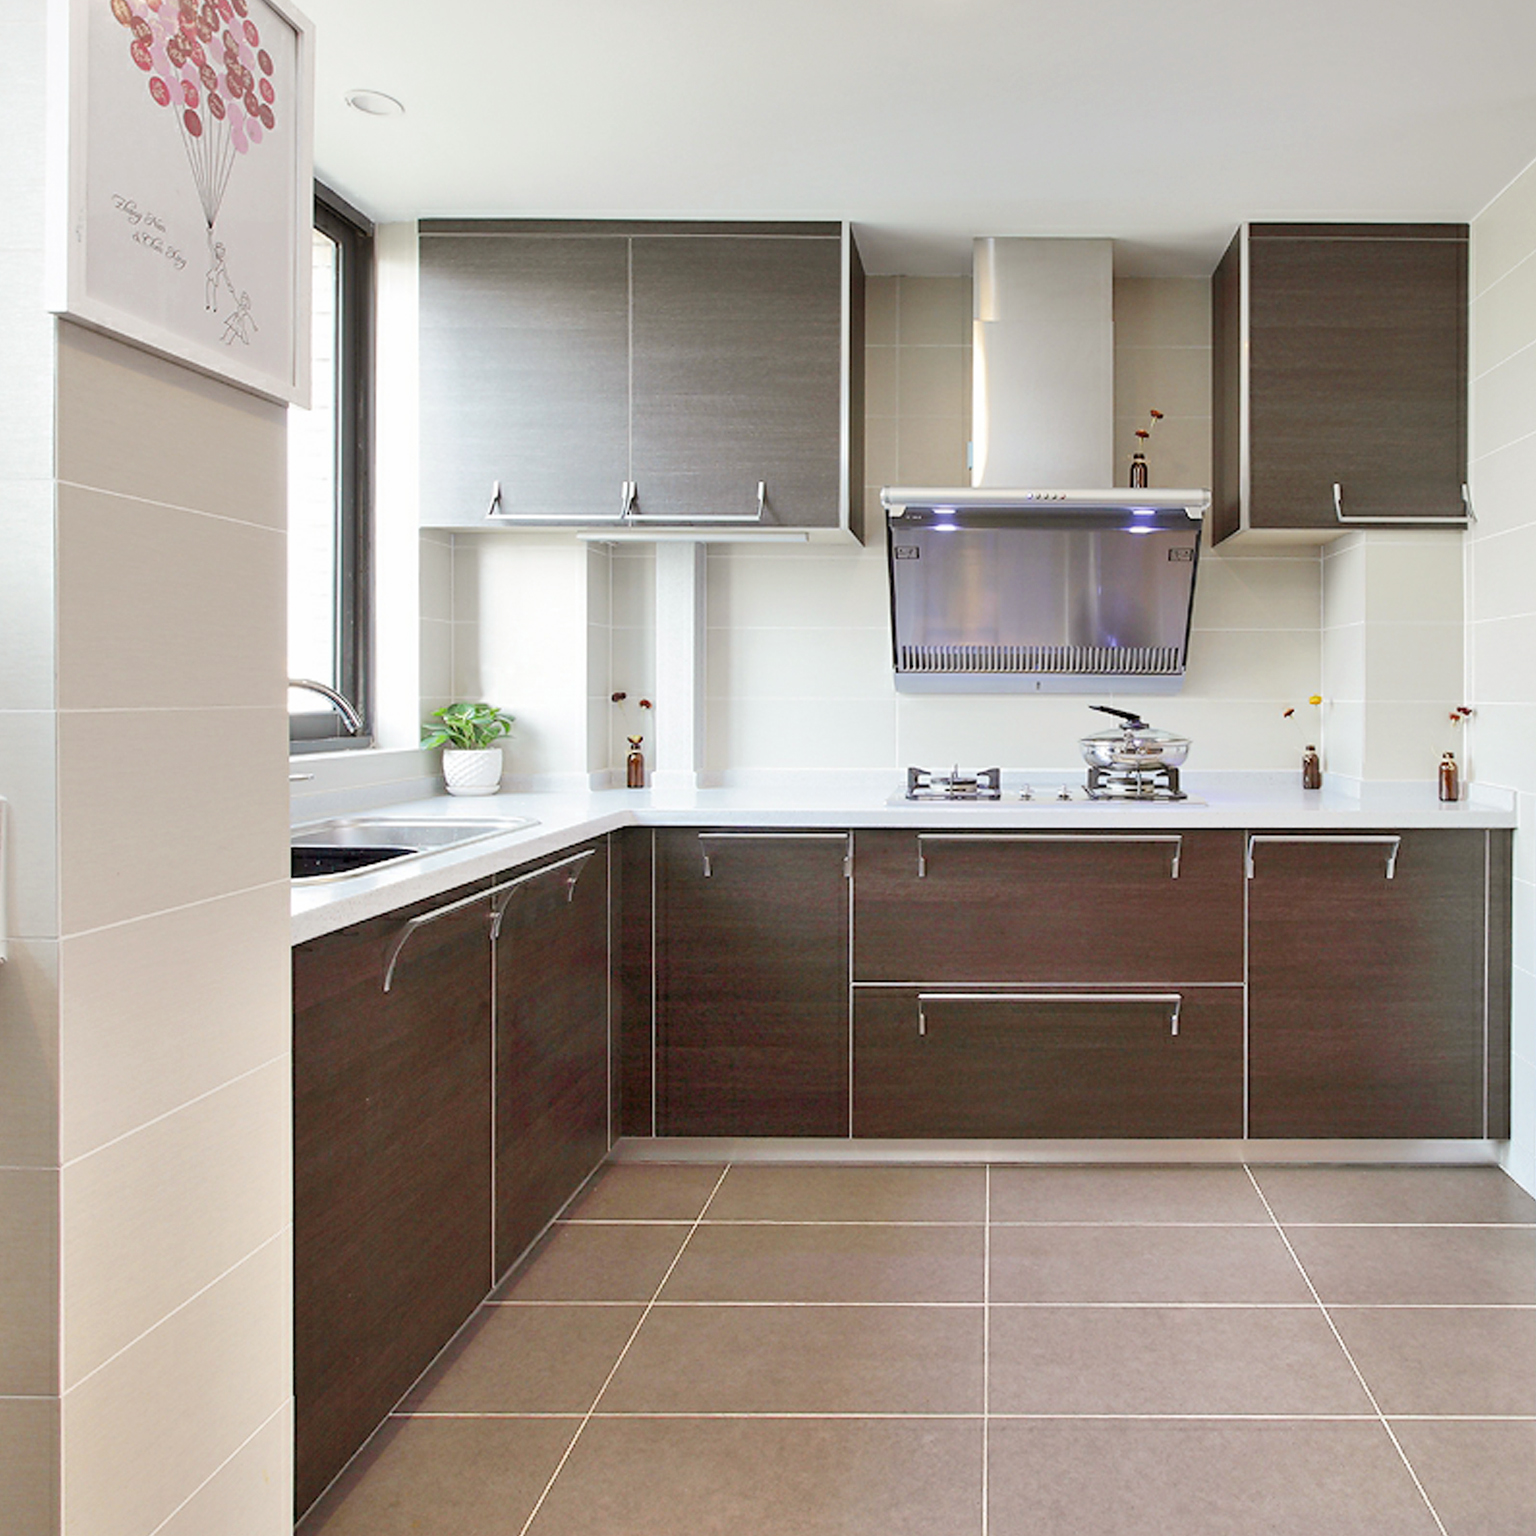 现代简约的深色烤漆橱柜与白色台面对比鲜明，使整个厨房干净整洁。